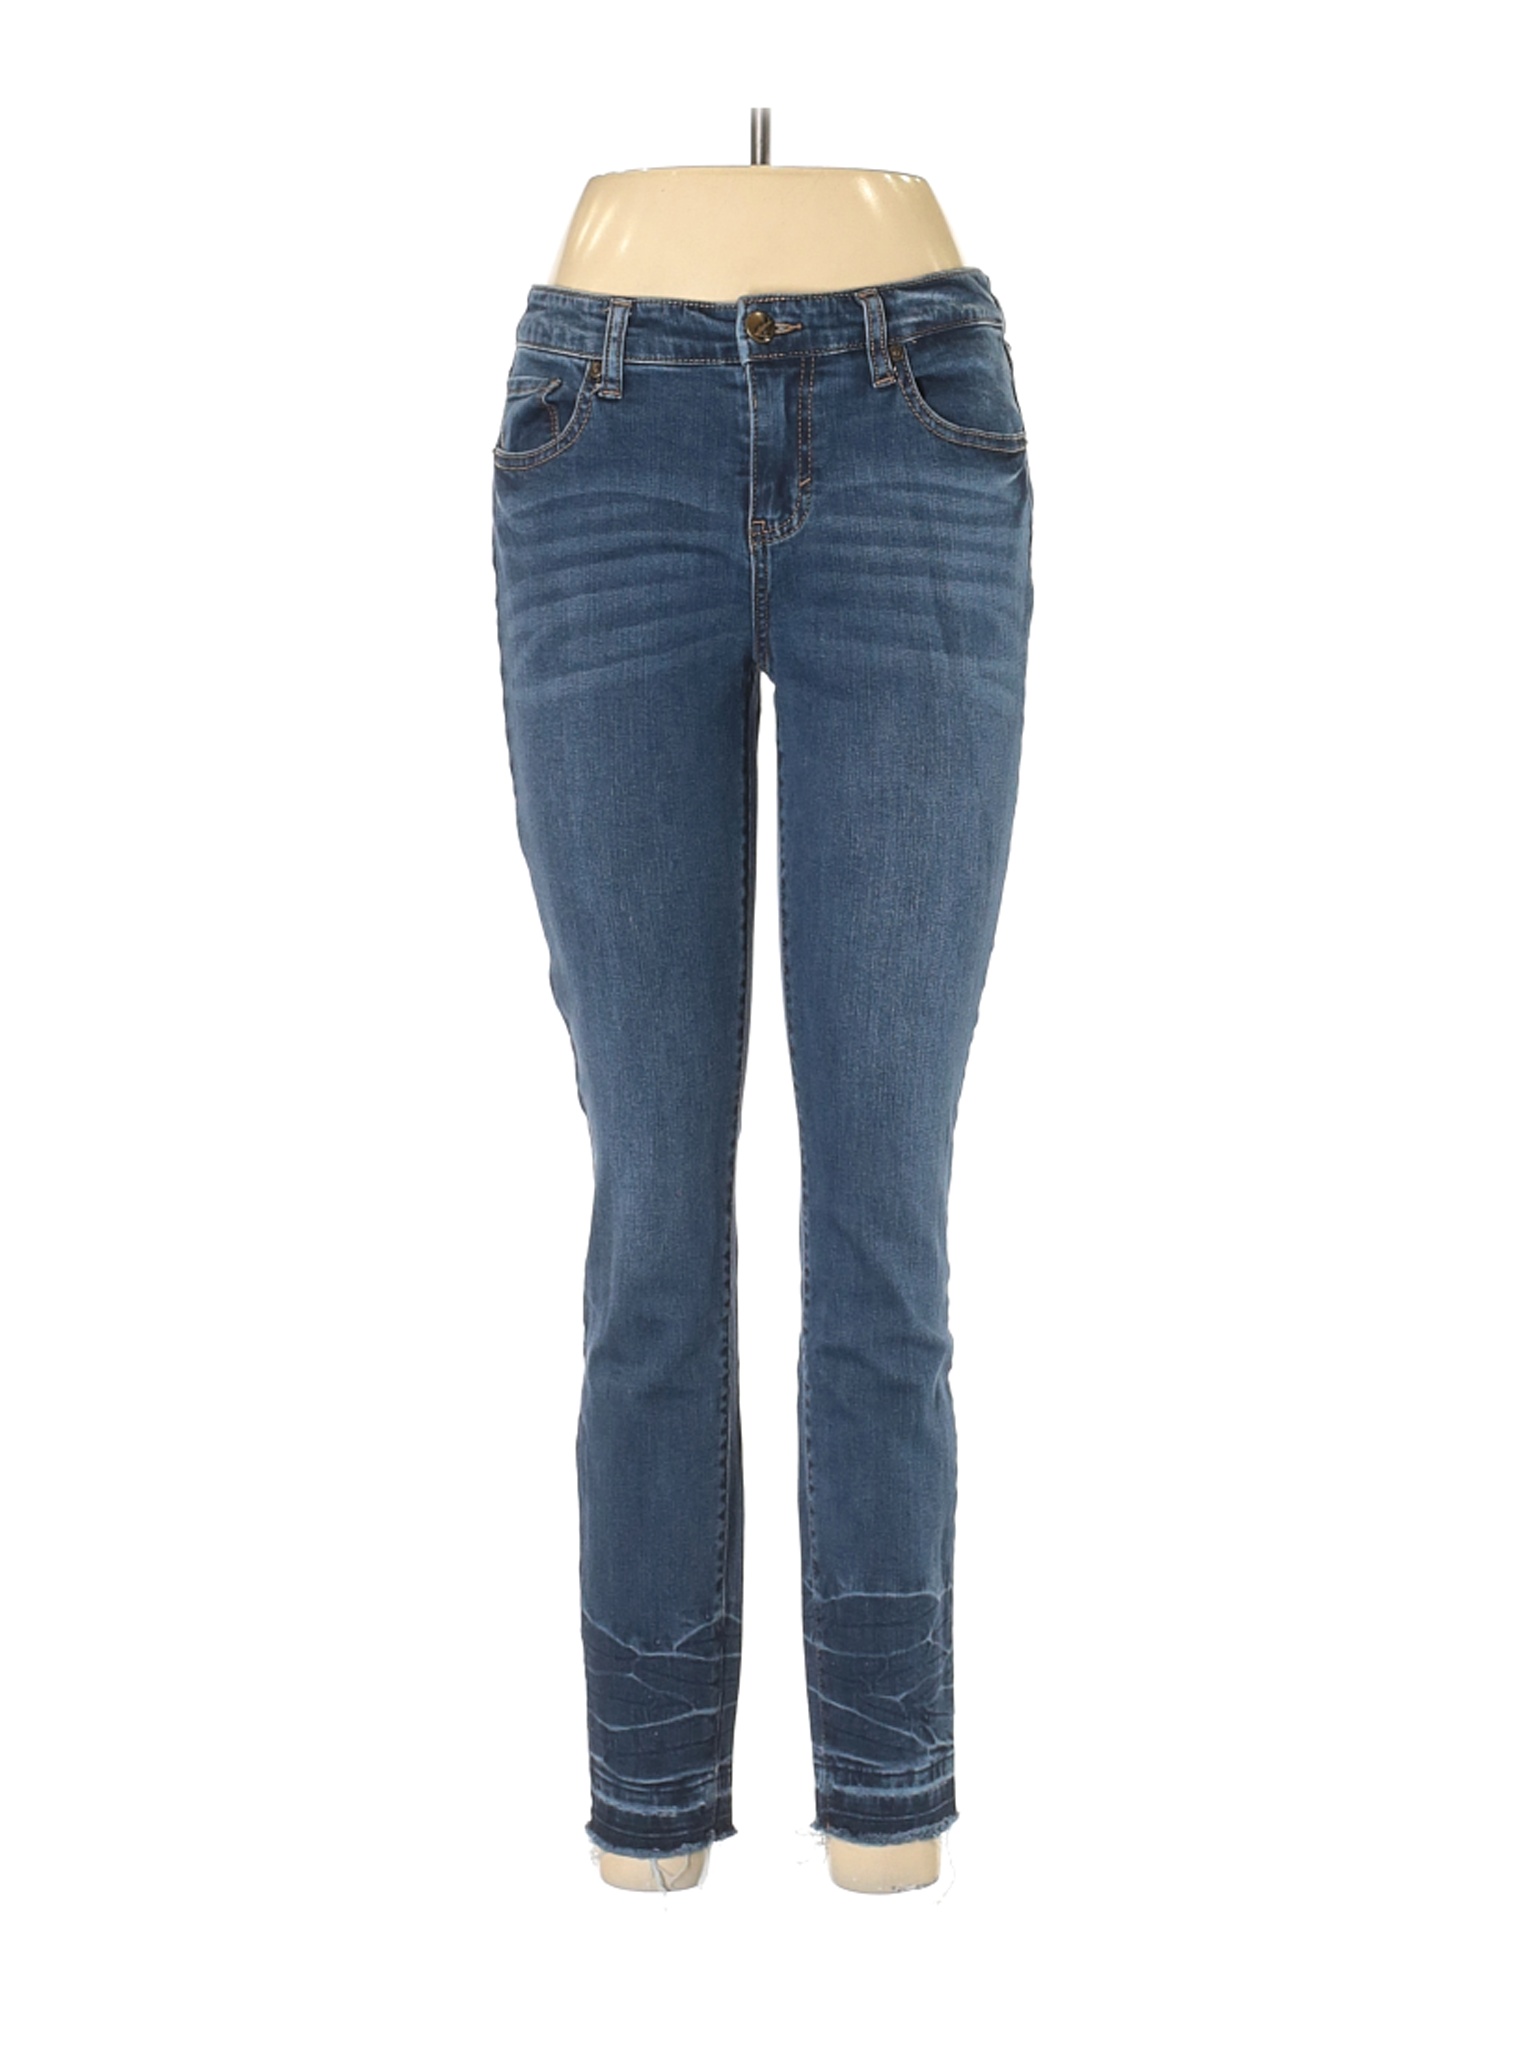 Style&Co Women Blue Jeans 6 | eBay